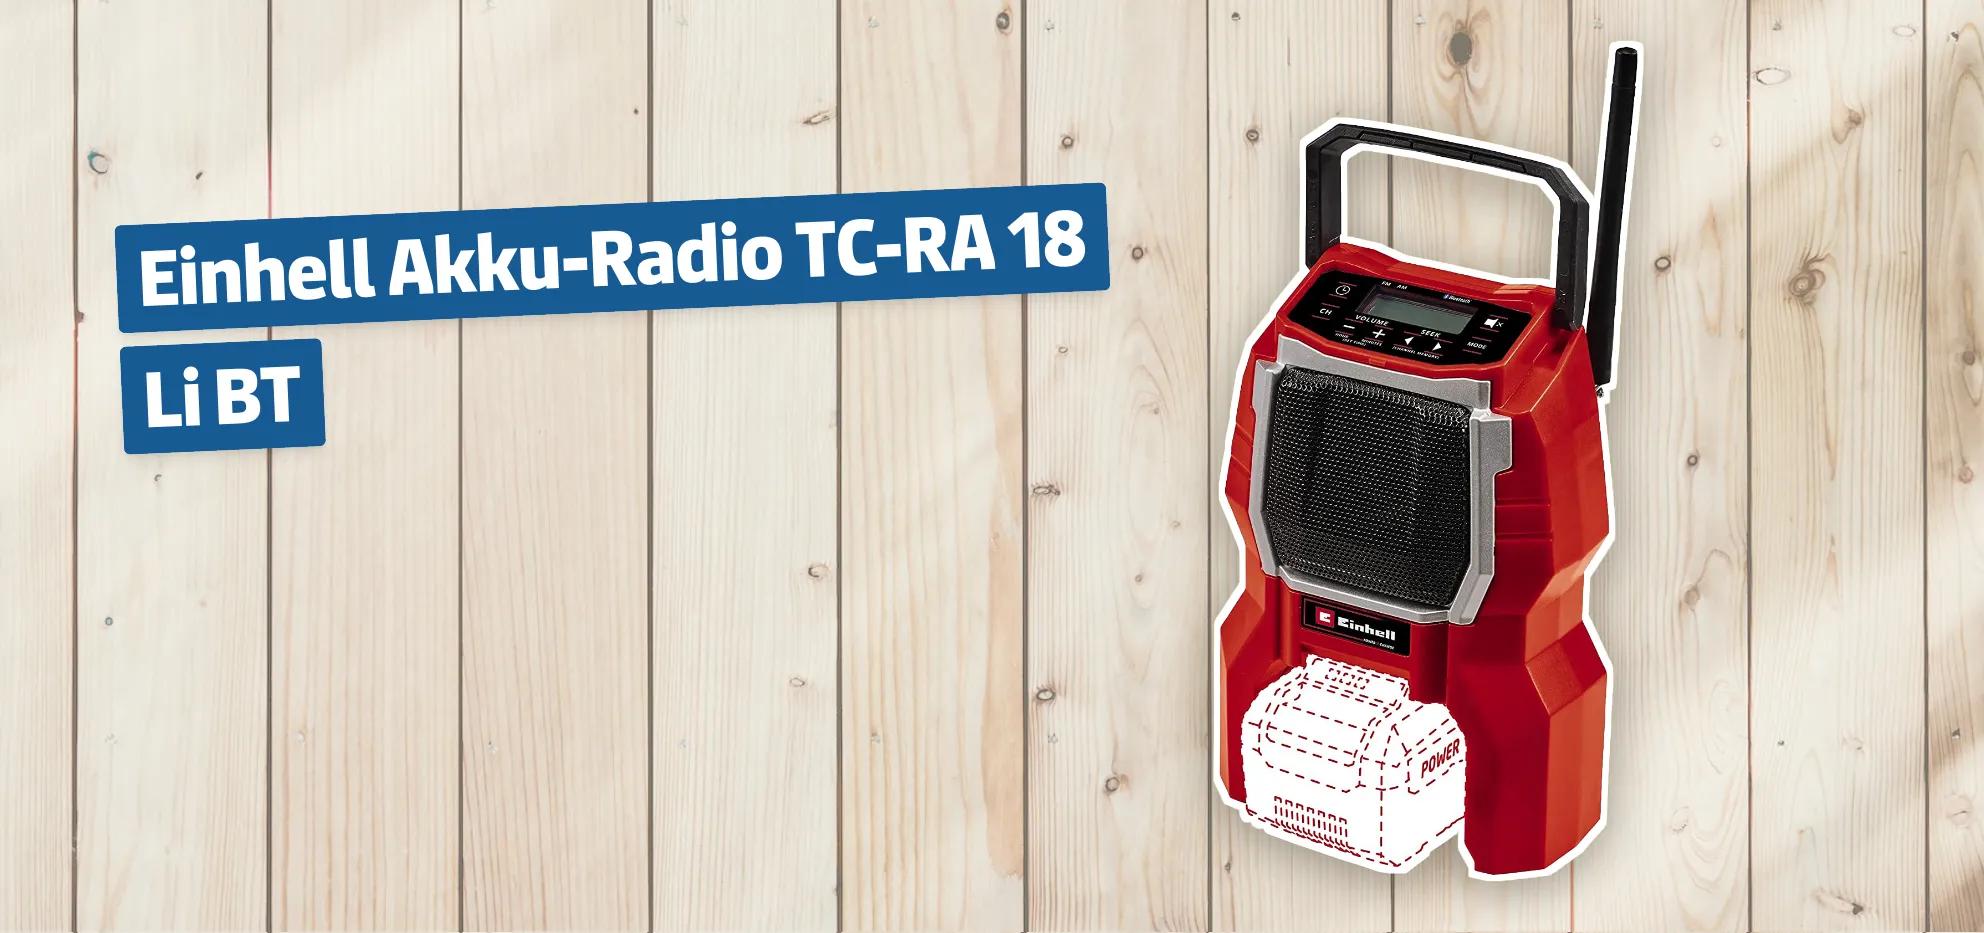 Einhell Akku-Radio TC-RA 18 Li BT